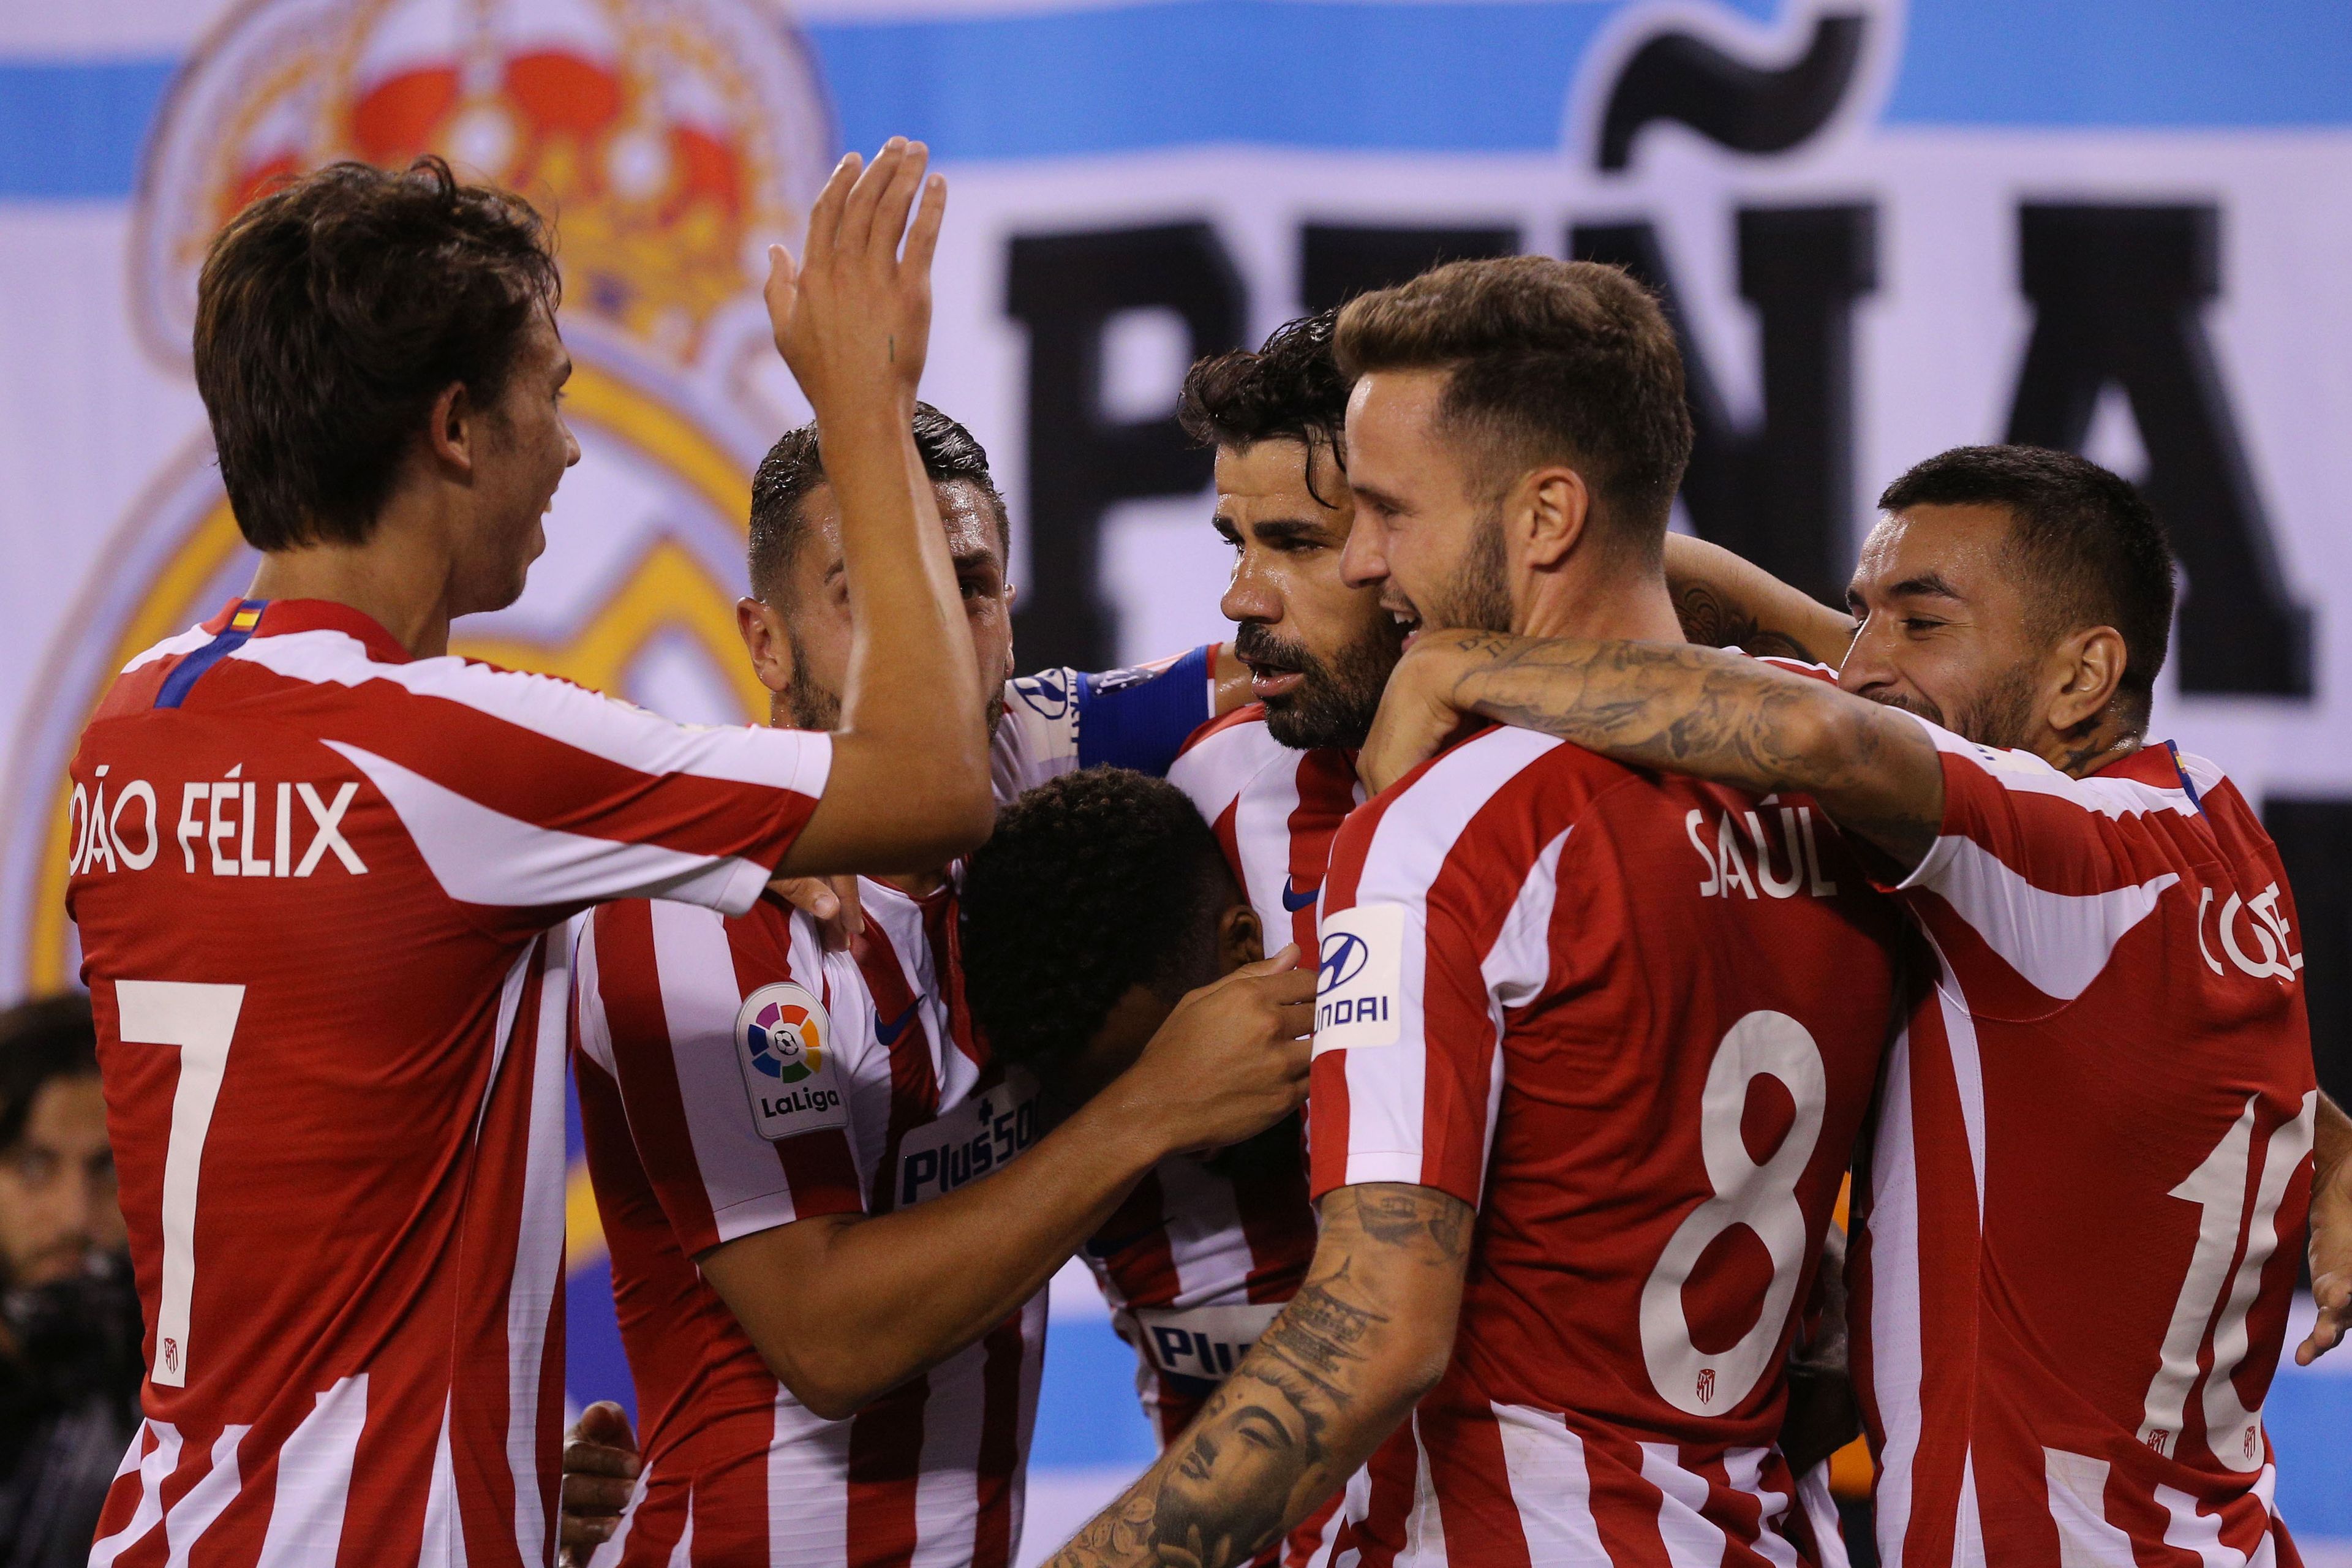 Jugadores del Atlético de Madrid celebrando un gol